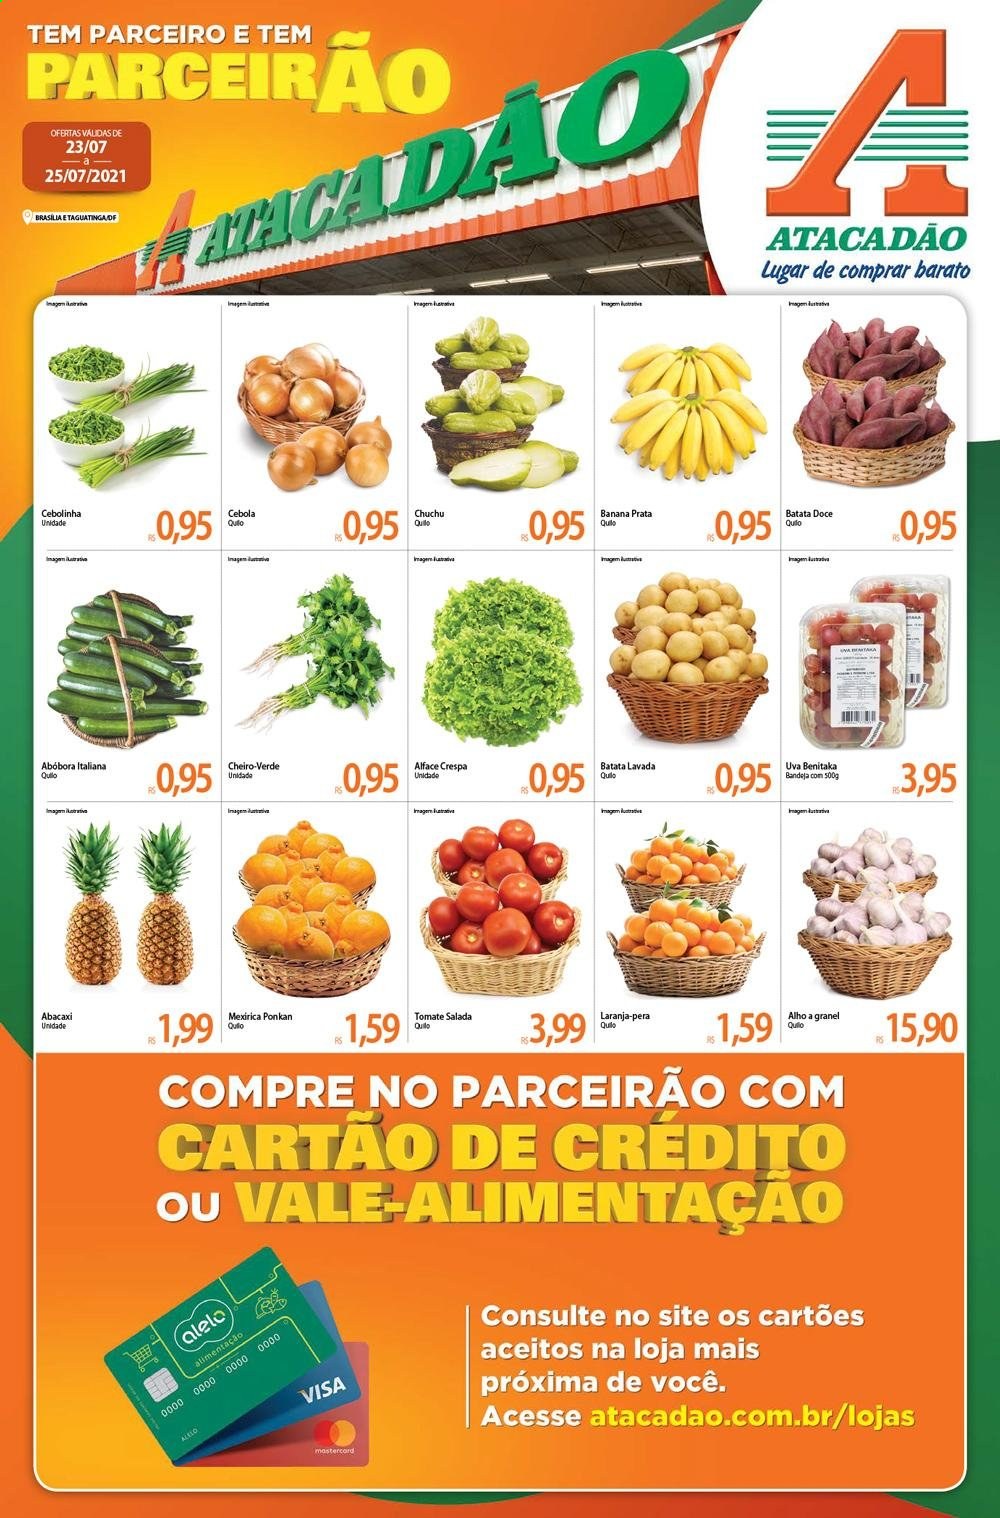 thumbnail - Folheto Atacadão - 23/07/2021 - 25/07/2021 - Produtos em promoção - banana, pera, abacaxi, laranja, uva, chuchu, batata-doce, alface, abóbora, alho, cebola, cebolinha, bandeja. Página 1.